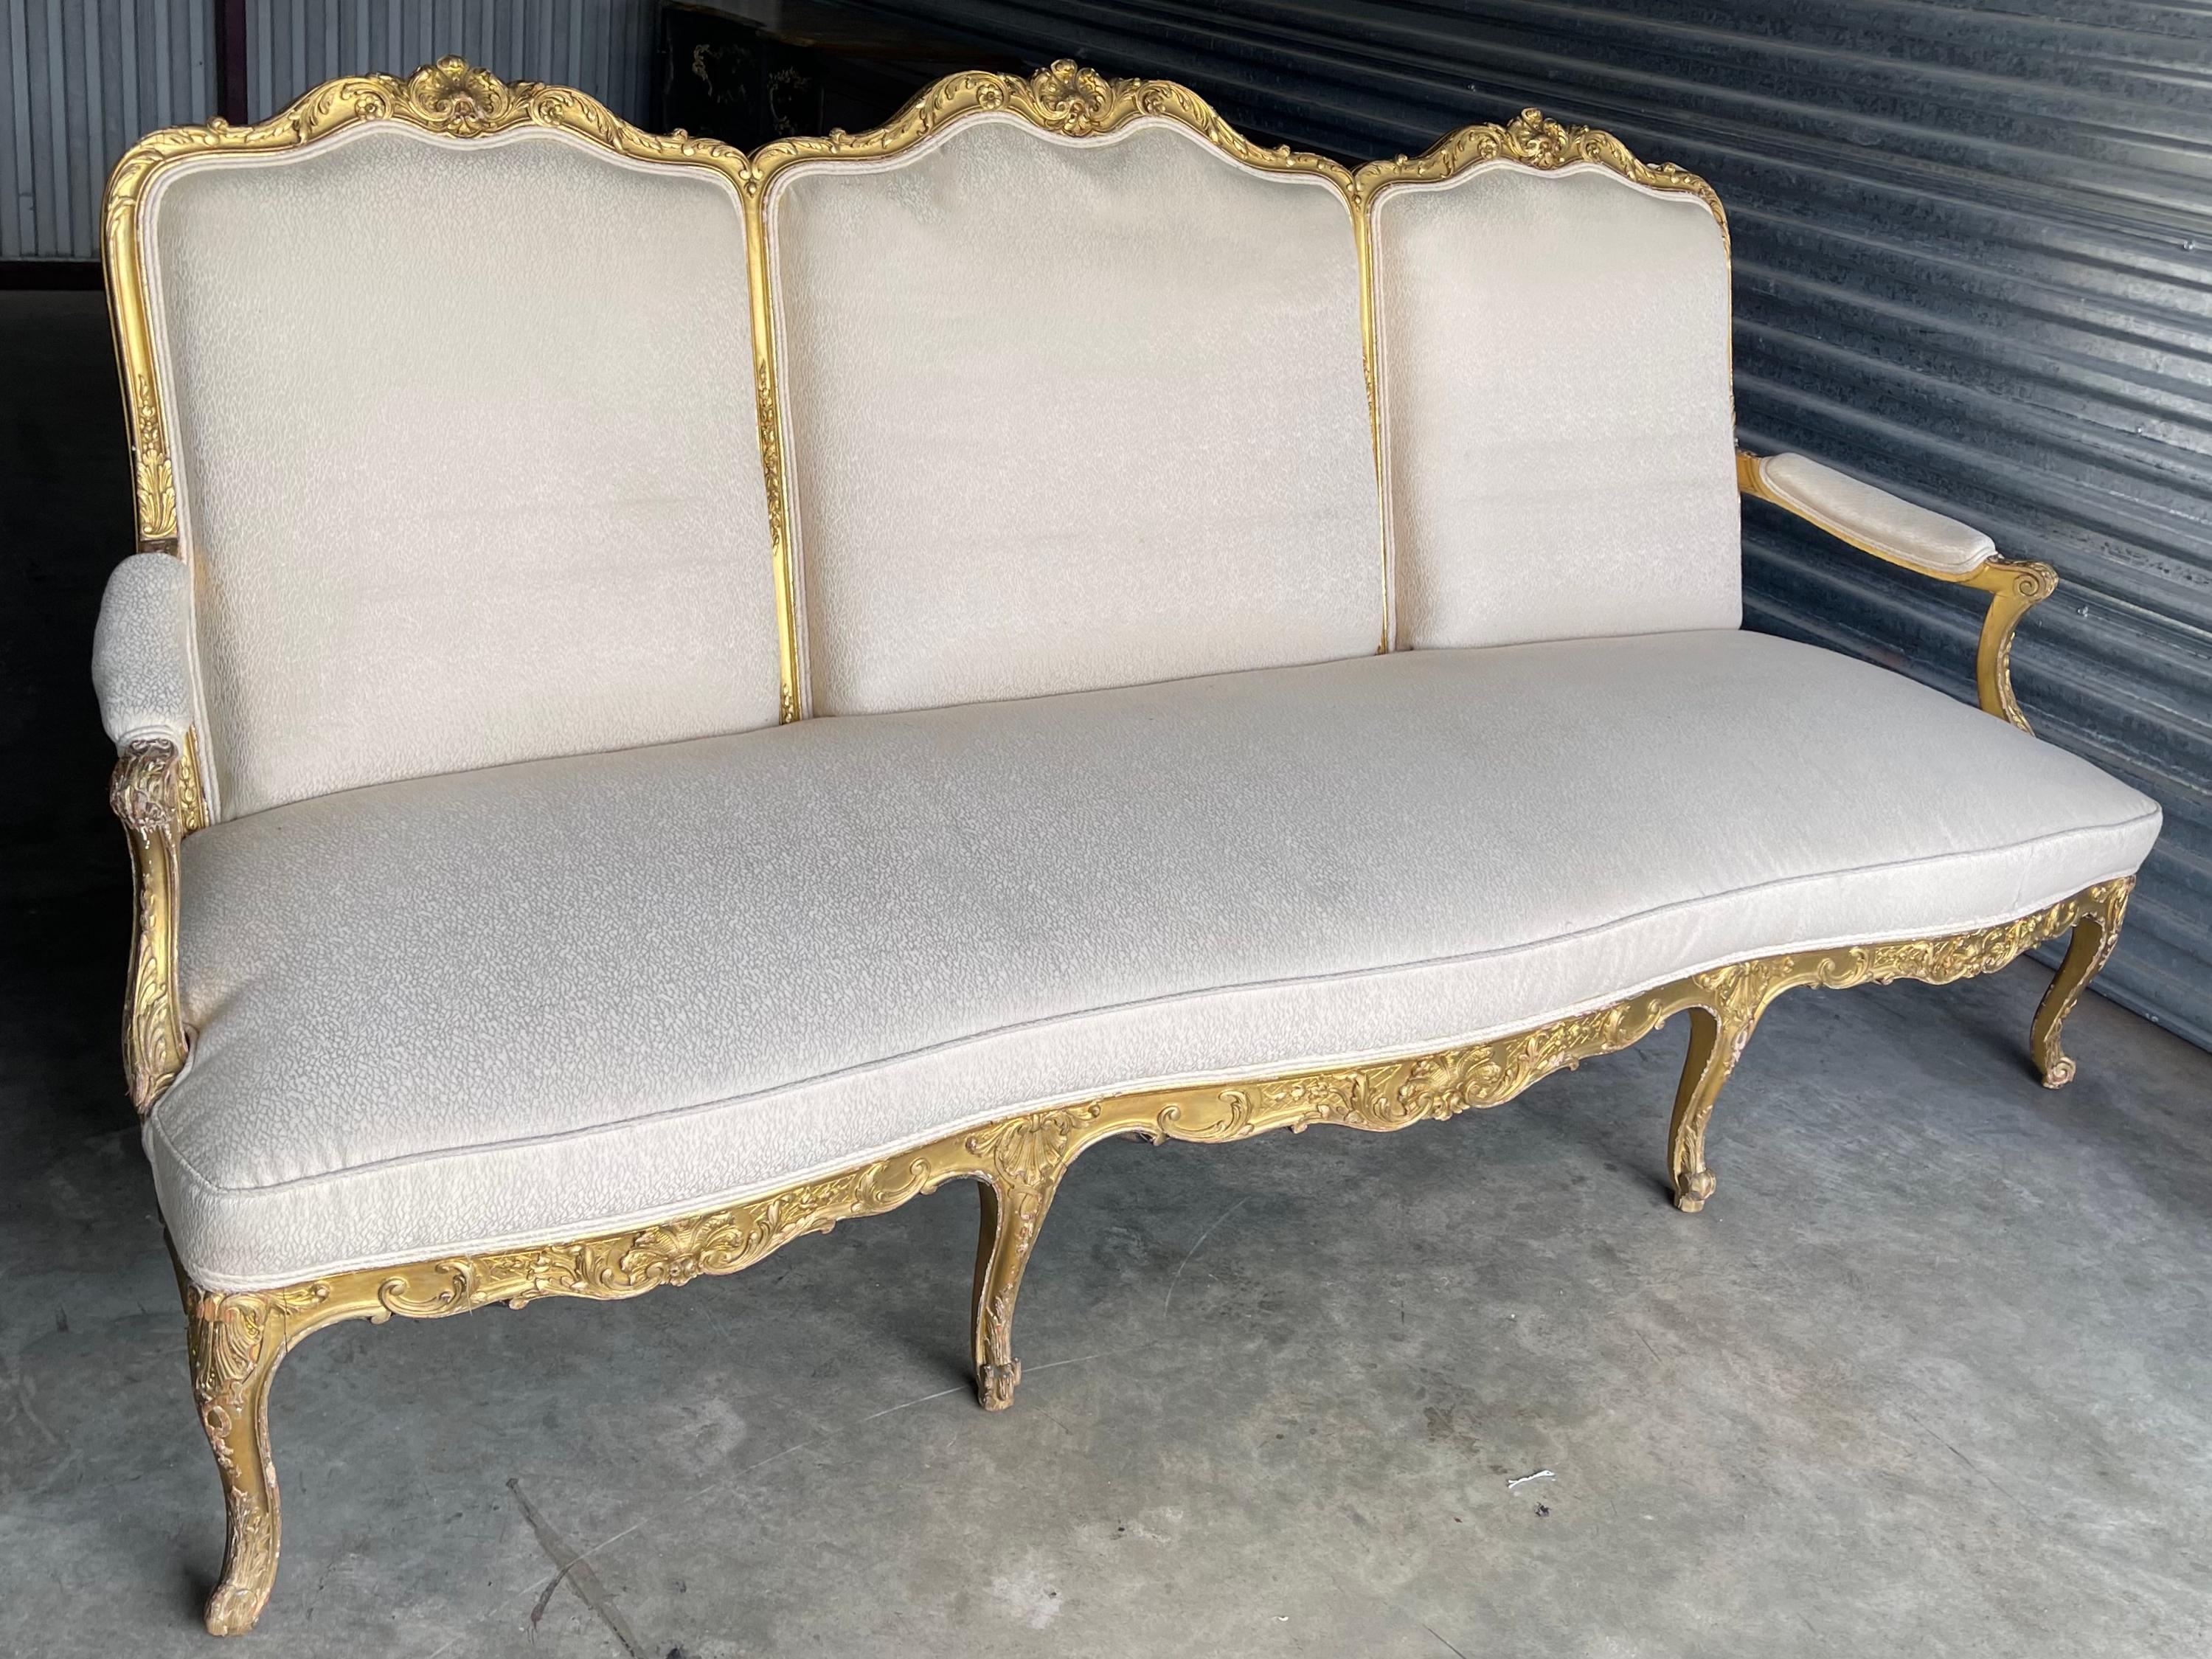 Dies ist eine schöne antike Französisch Louis XV-Stil geschnitzt Vergoldung Sofa. Beachten Sie die geschnitzte Muschelrückseite! Der Vintage-Stoff weist einige Gebrauchsspuren auf, ist aber ohne Löcher.